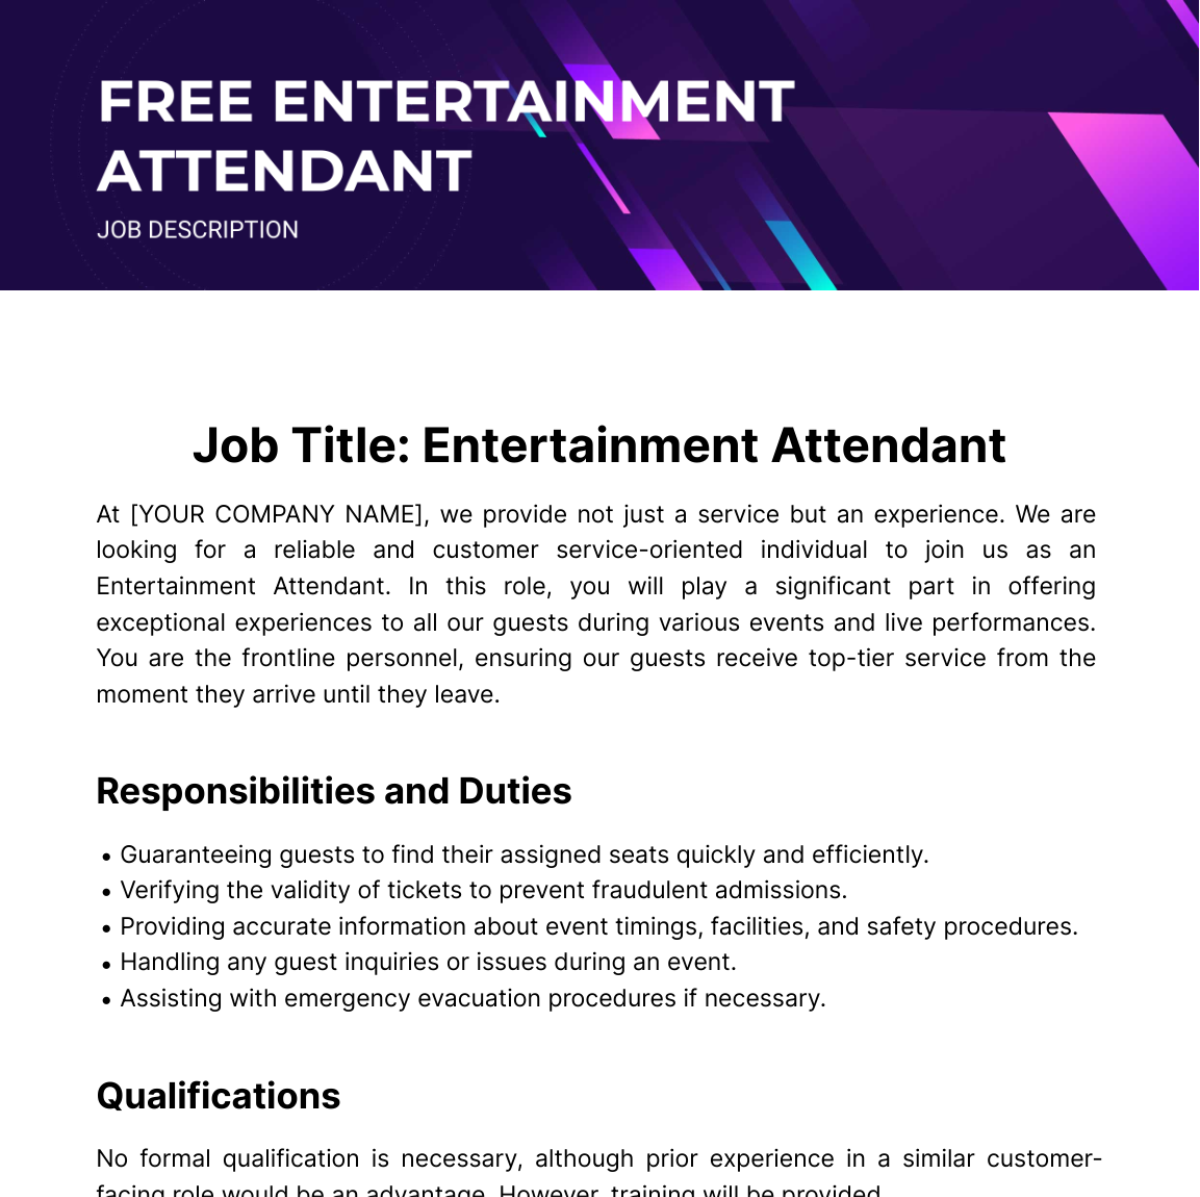 Free Entertainment Attendant Job Description Template